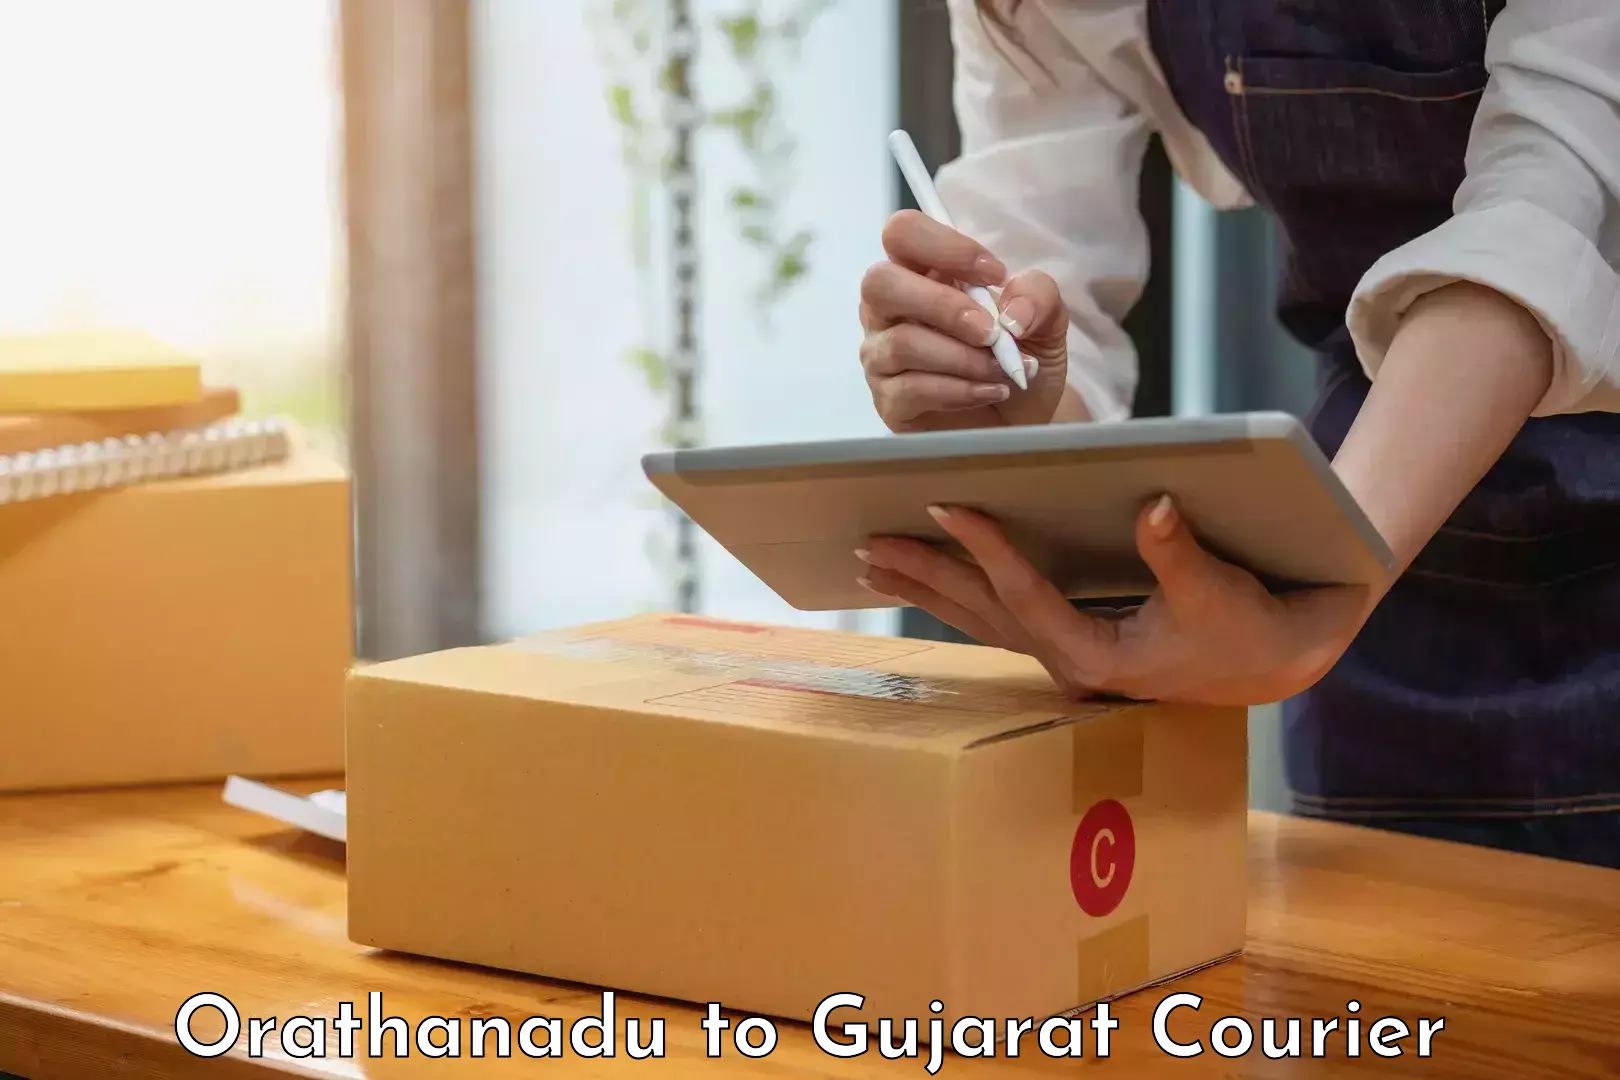 Customer-friendly courier services Orathanadu to Gandhinagar